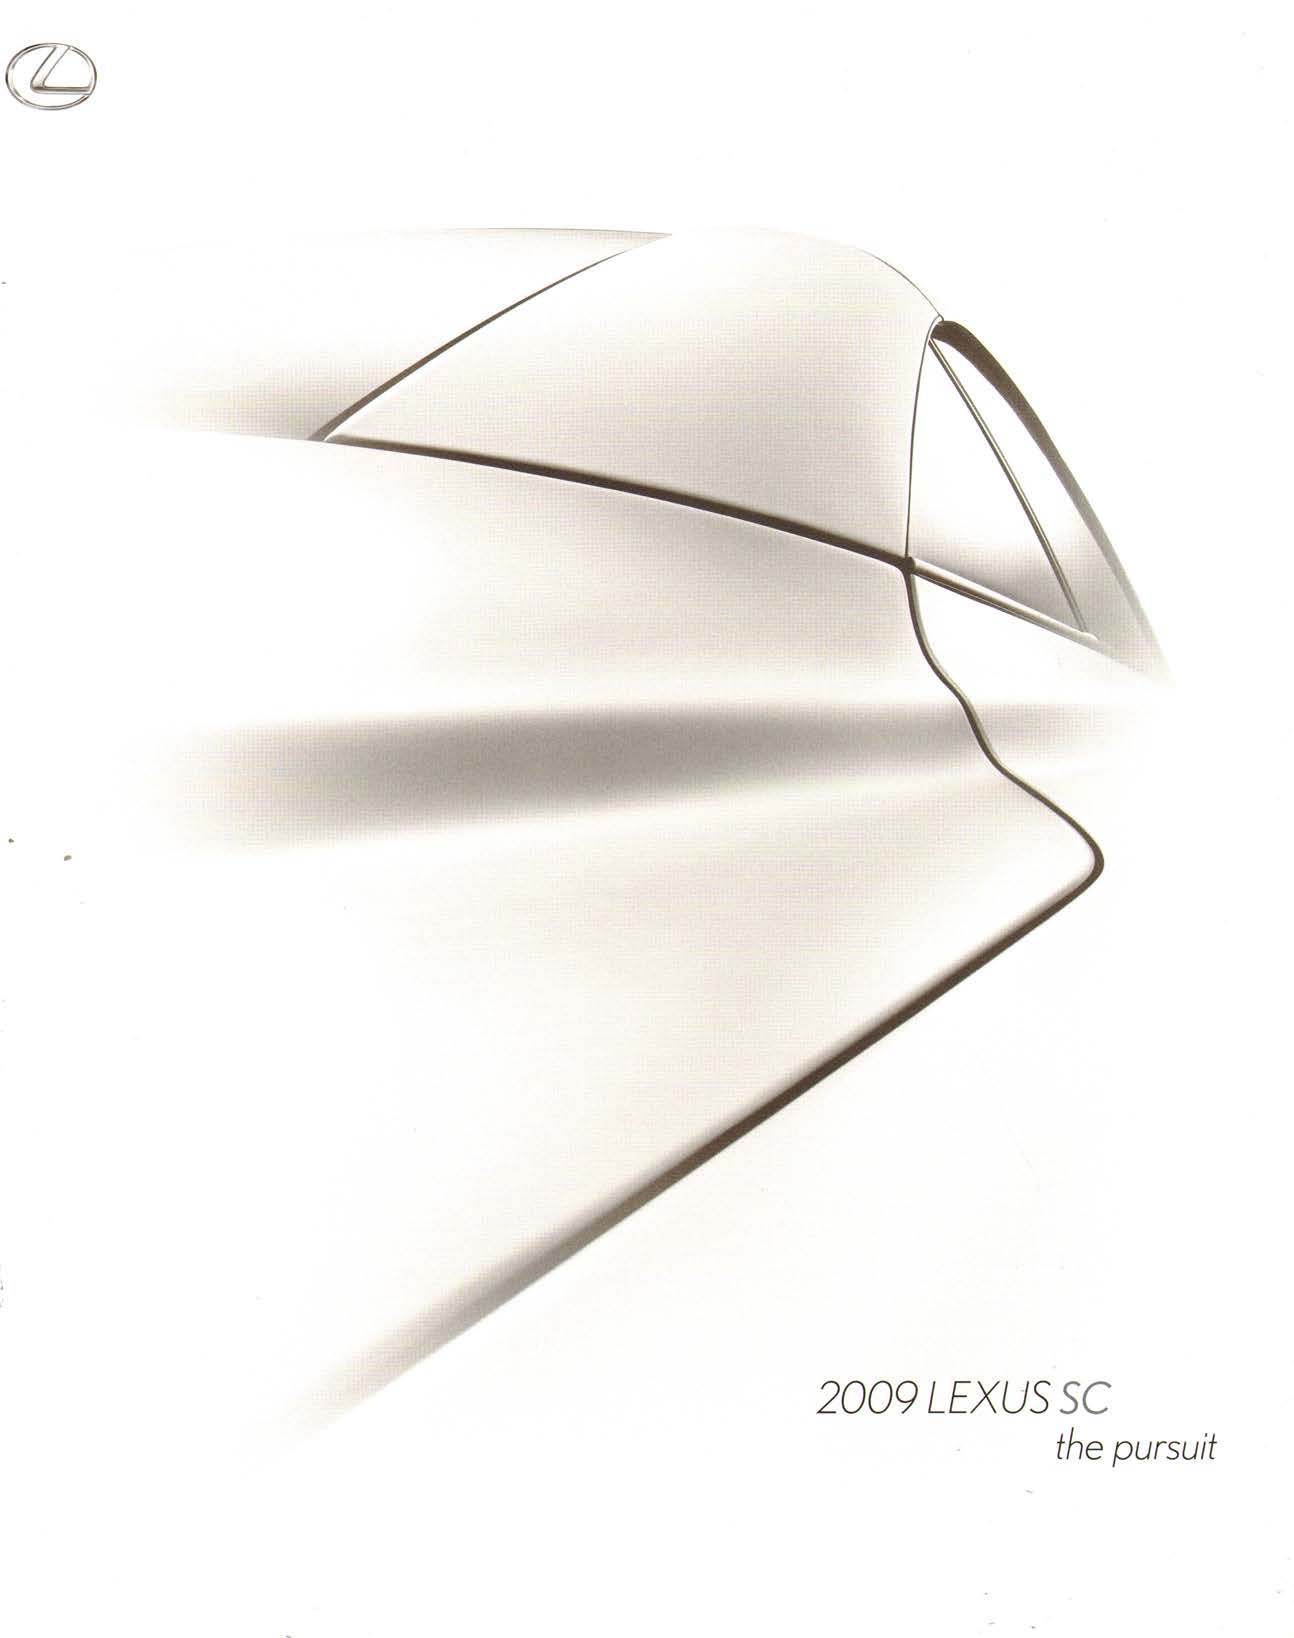 2009 Lexus SC Brochure Page 11